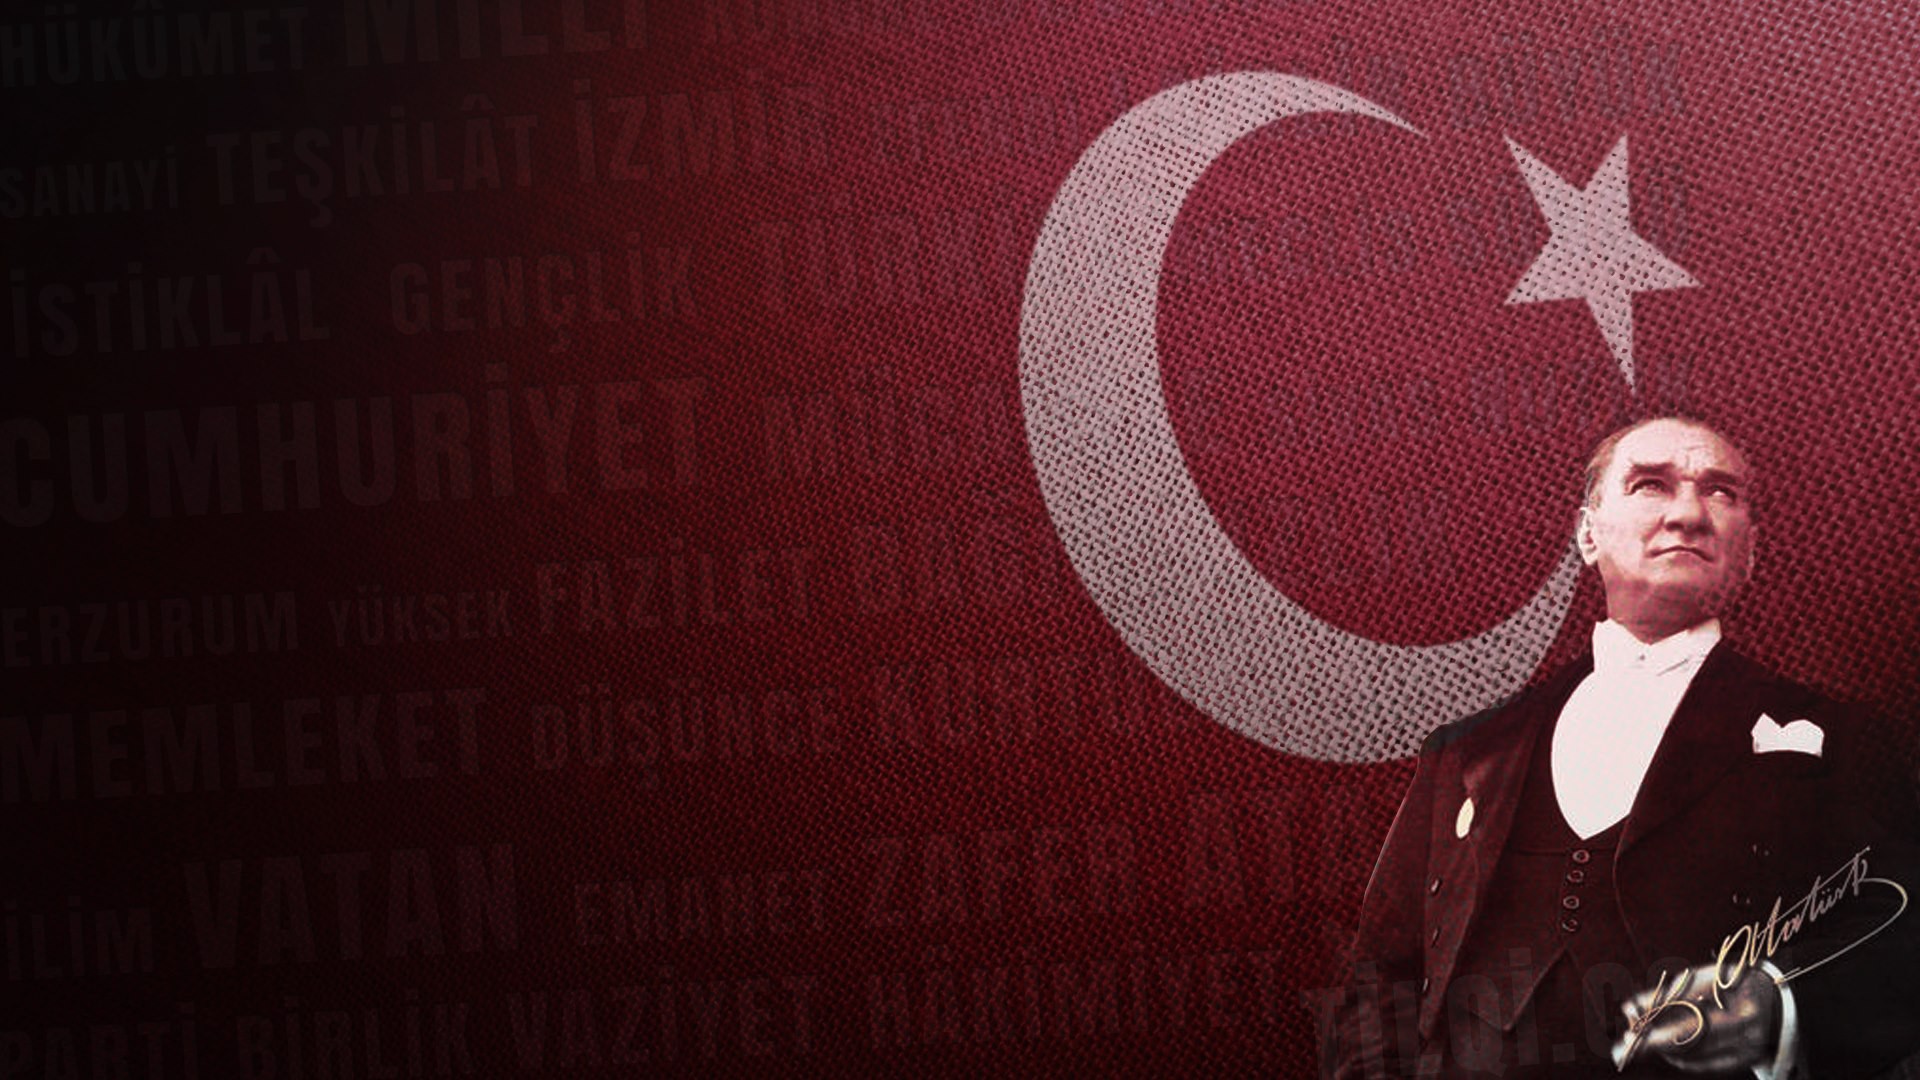 General 1920x1080 Mustafa Kemal Atatürk flag Turkey Turkish world leaders